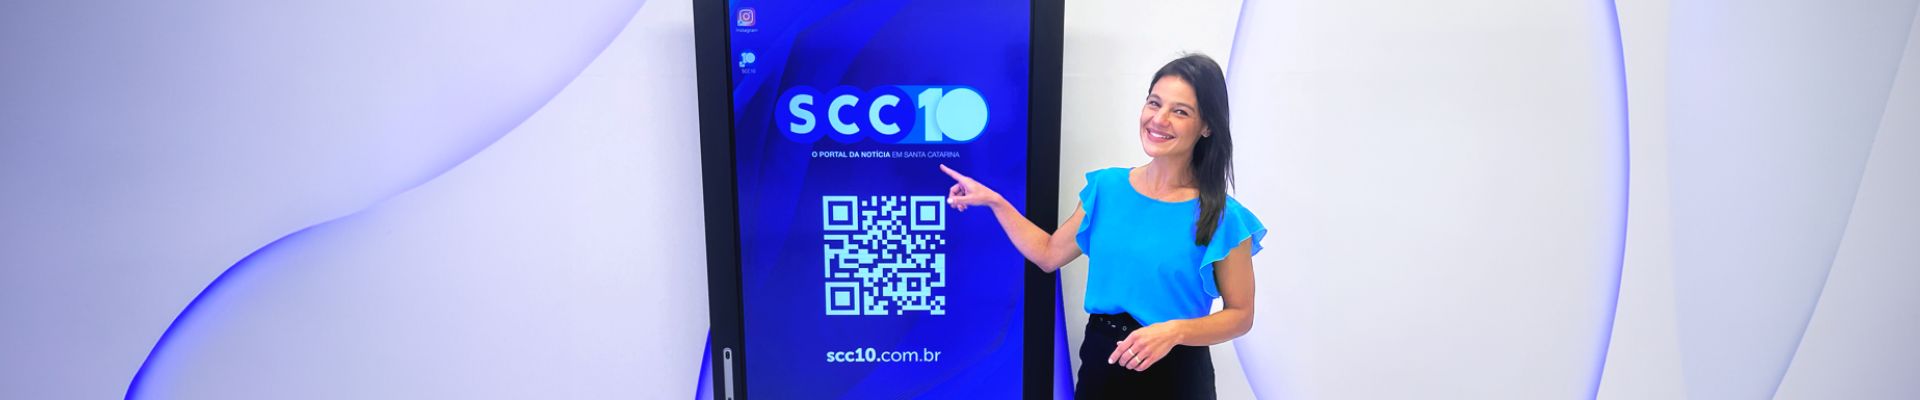 SCC10 transforma sua apresentação de notícias com tela interativa